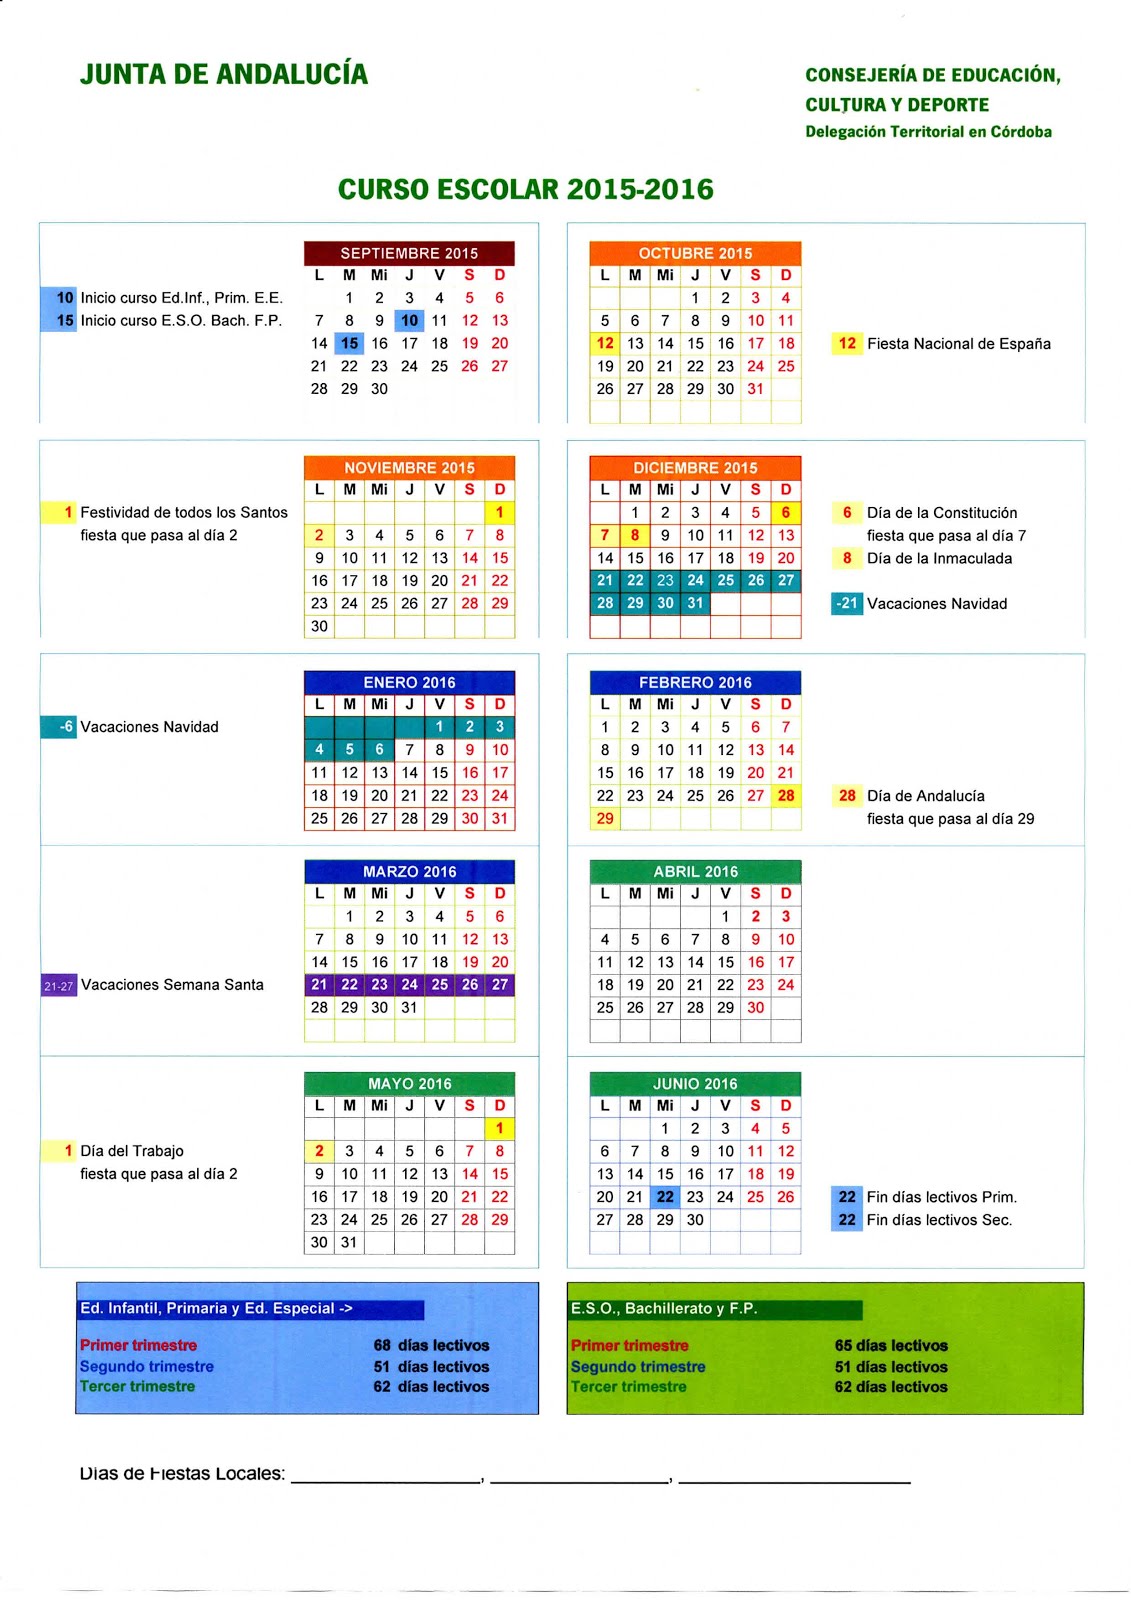 Calendario escolar 2015-2016